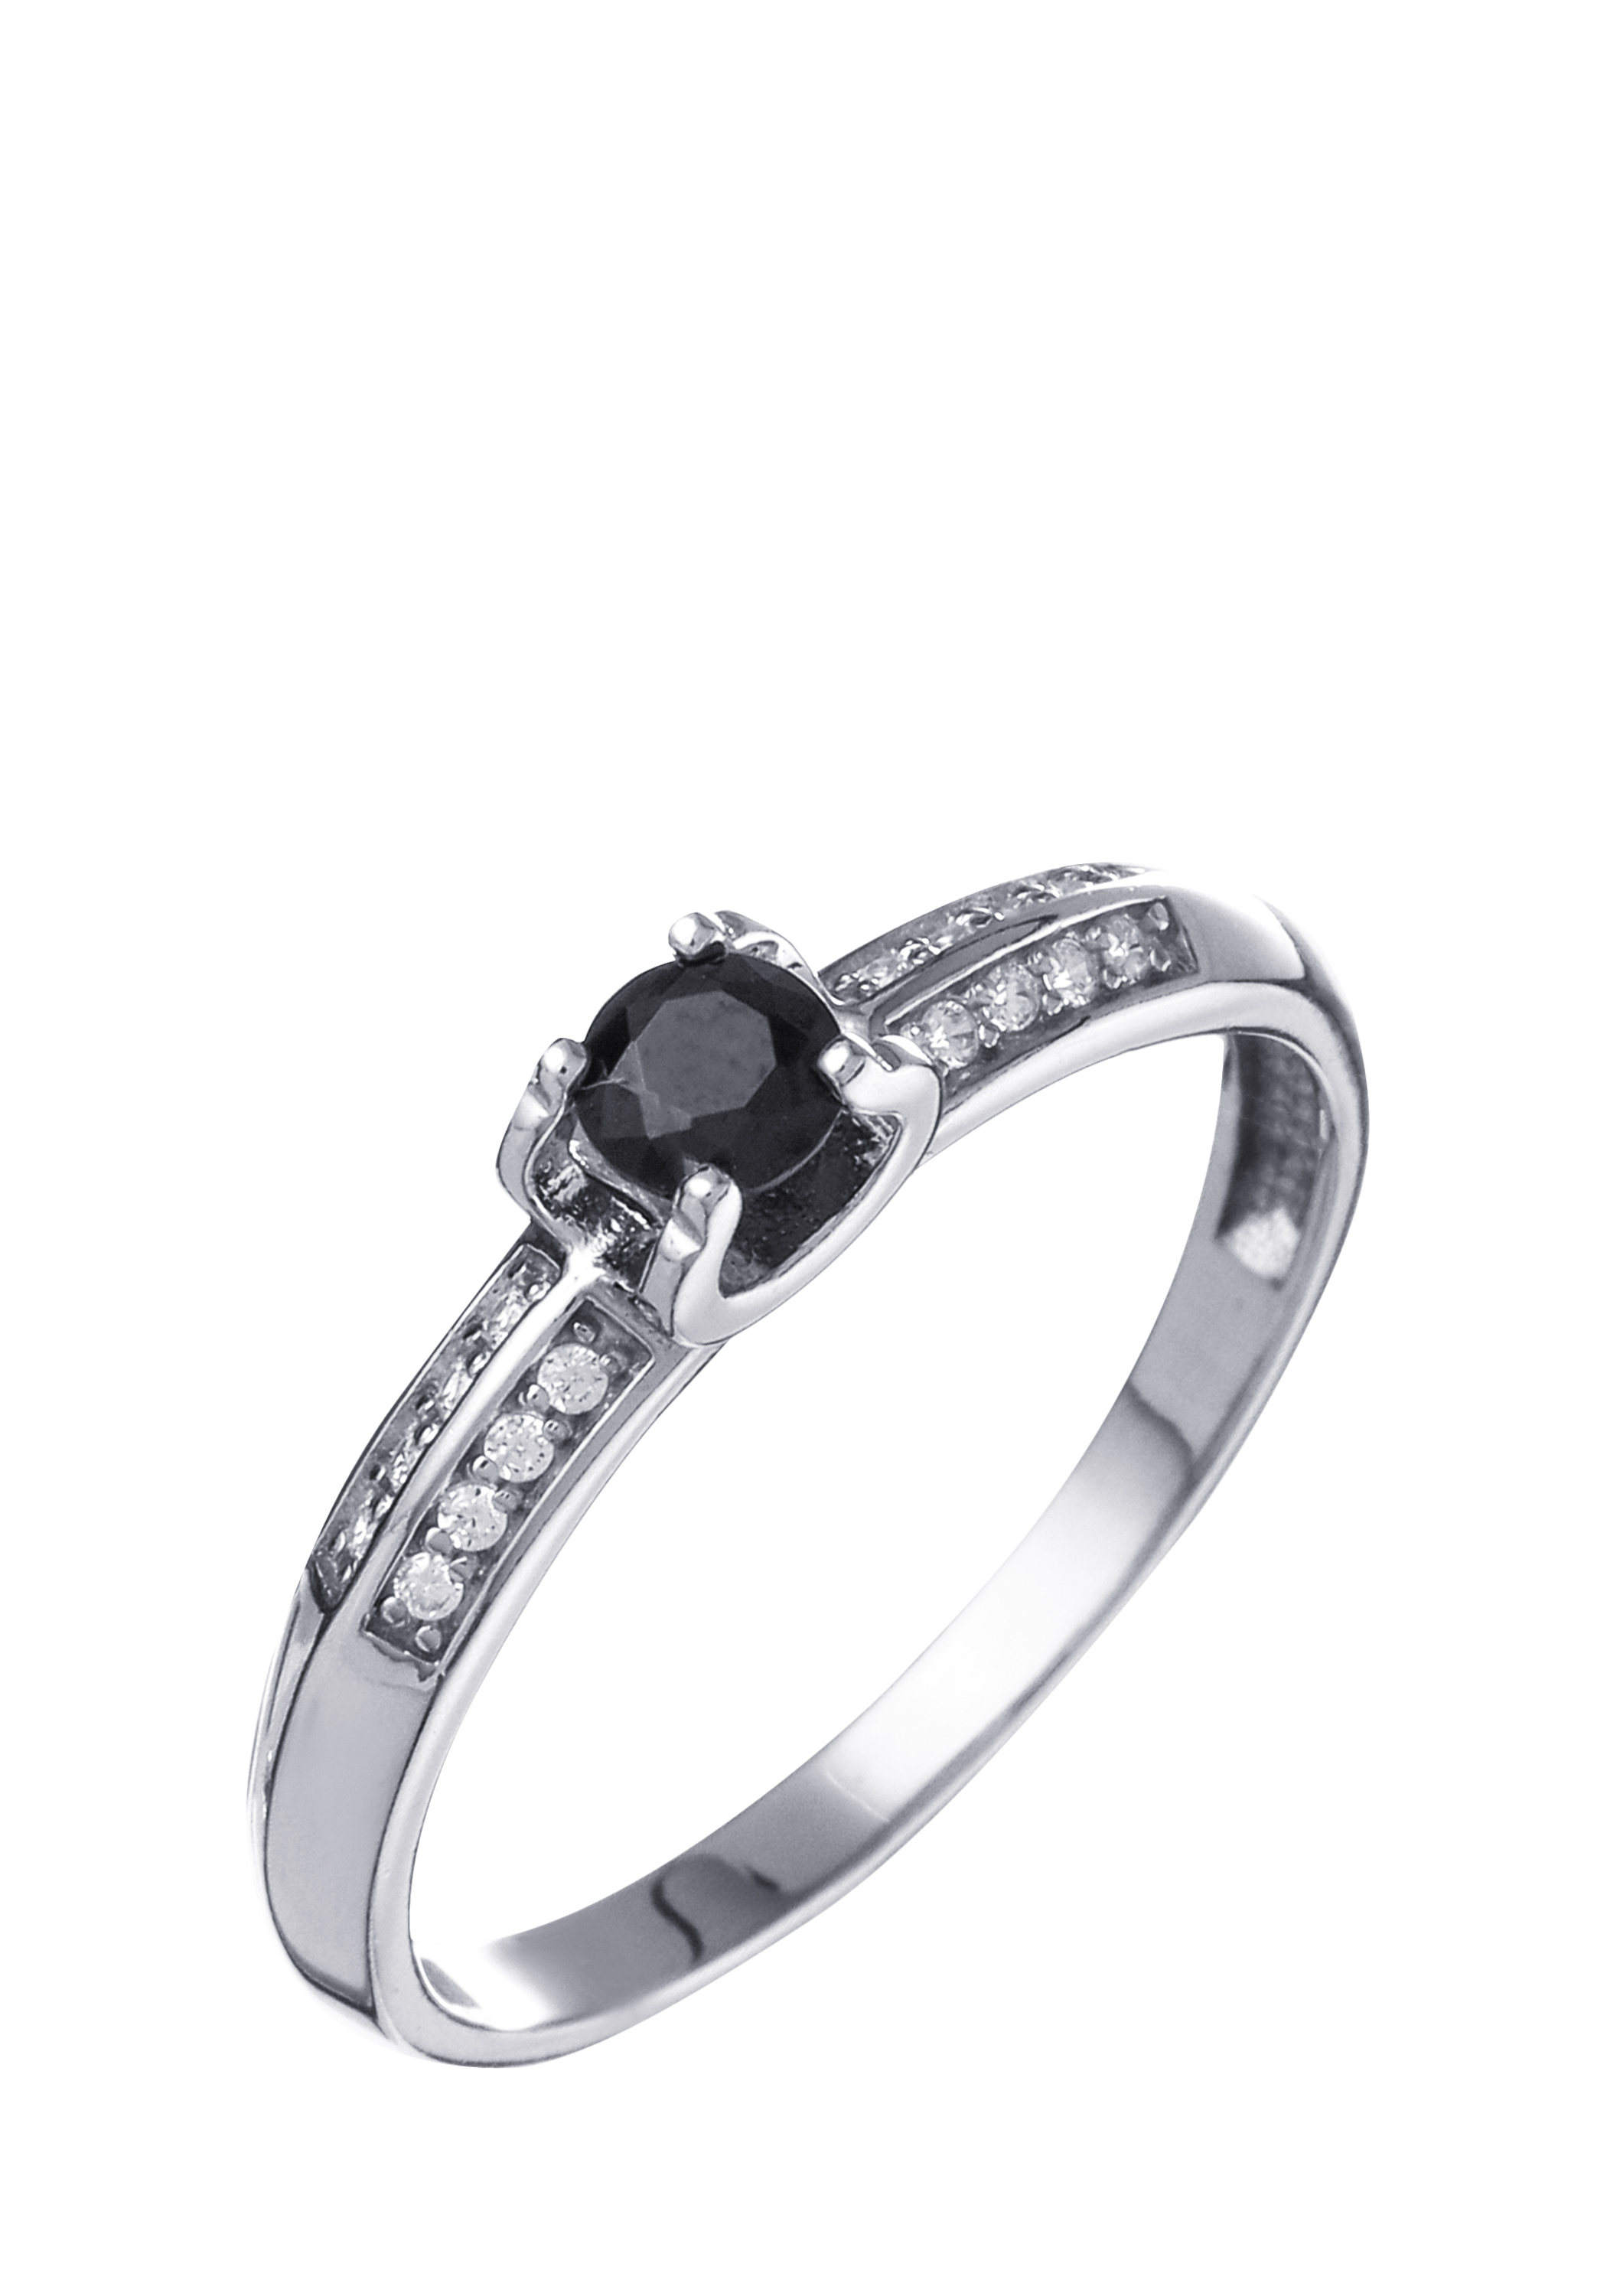 Кольцо серебряное "Гармоничная красота" Nouvelle, цвет черный, размер 17 сайдстоун - фото 1